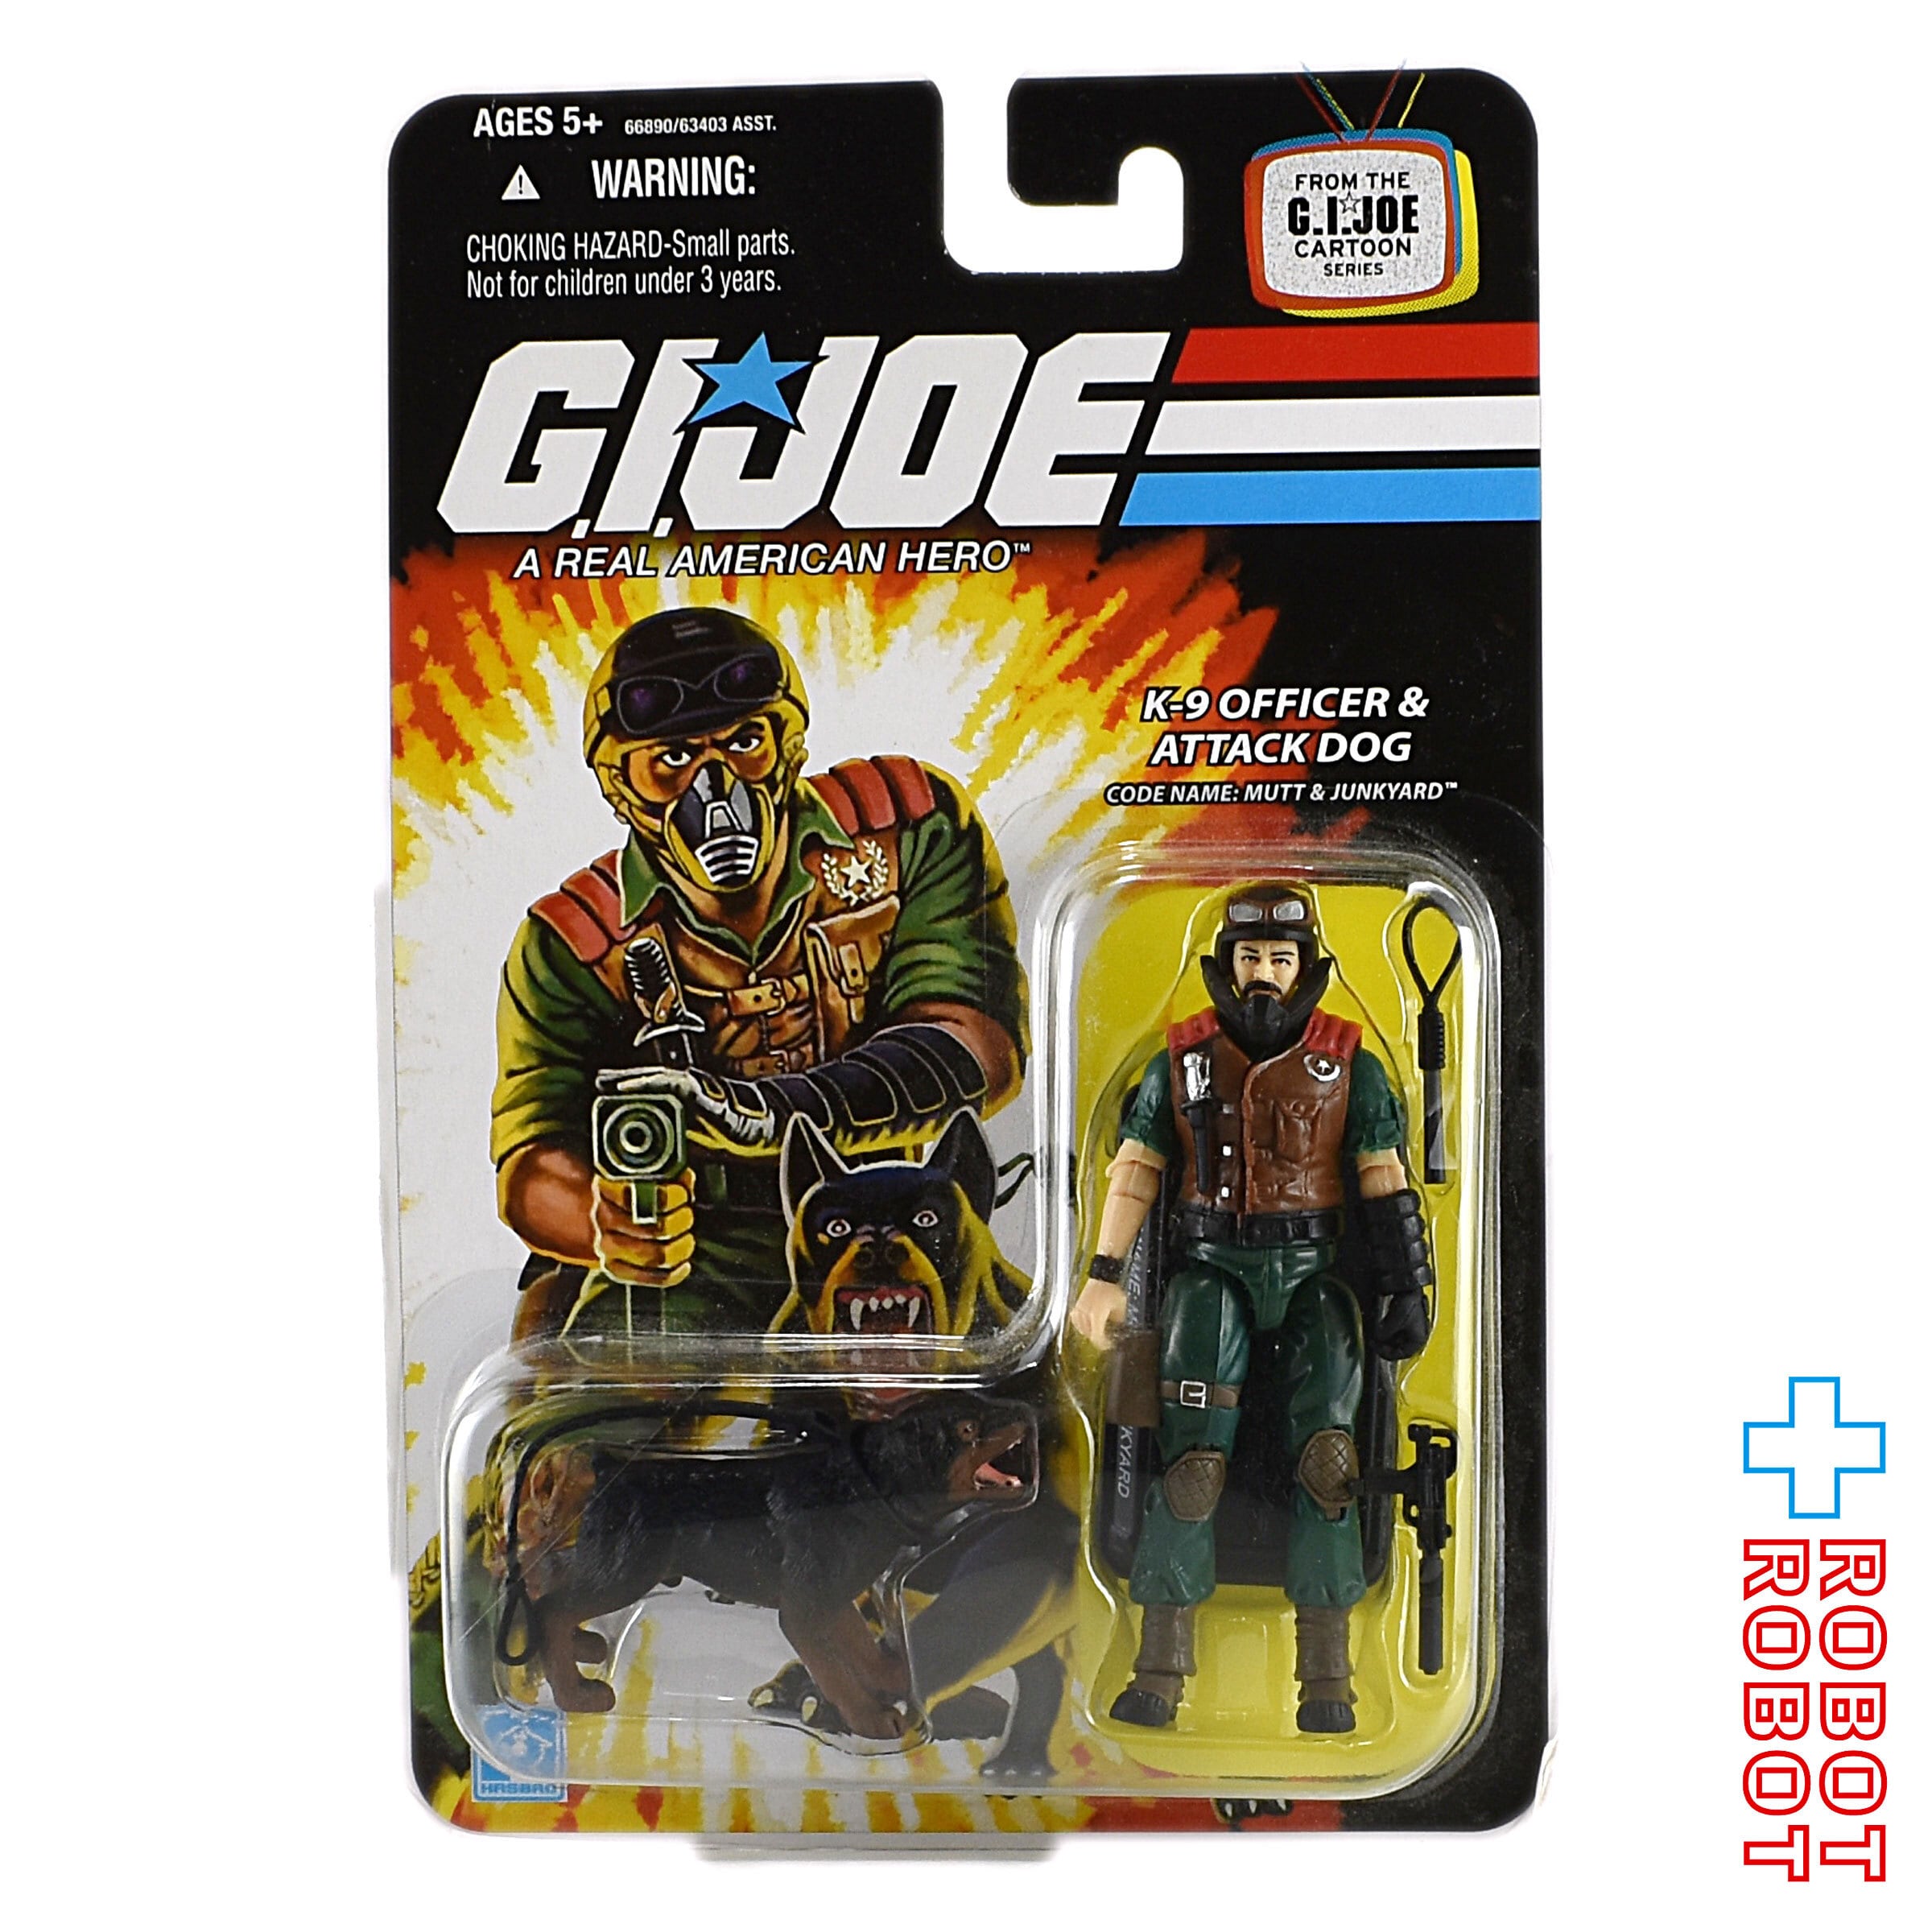 G.I.ジョー おもちゃ フィギュア G I Joe Action Figure: James 